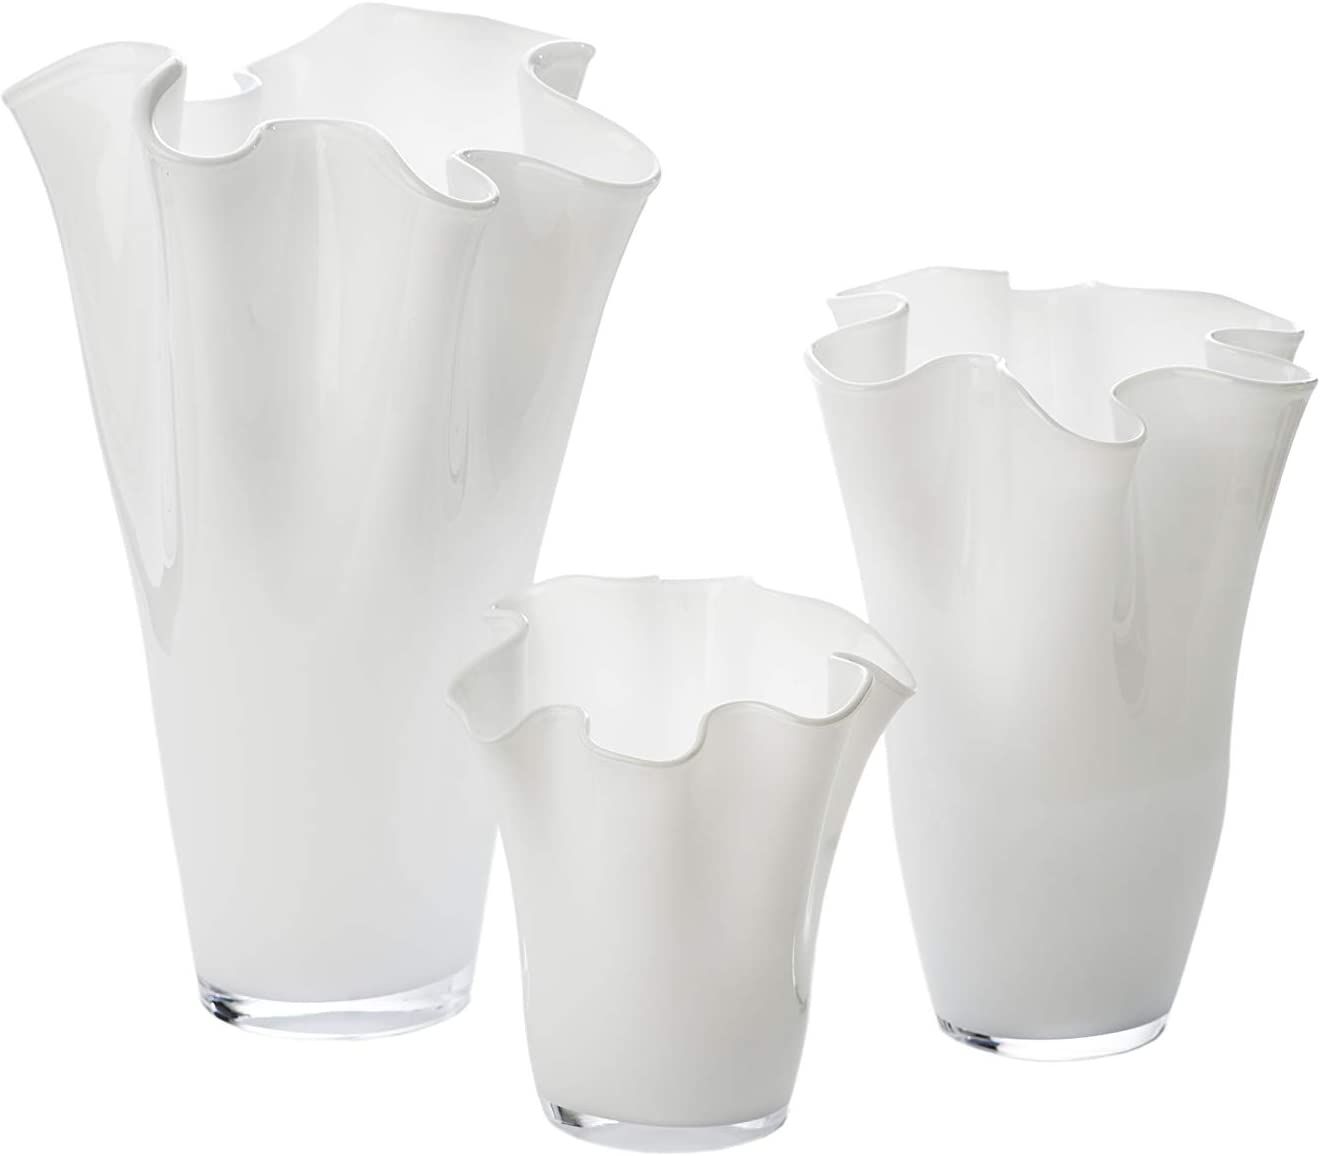 Abigails White Small Ruffle Vase | Amazon (US)